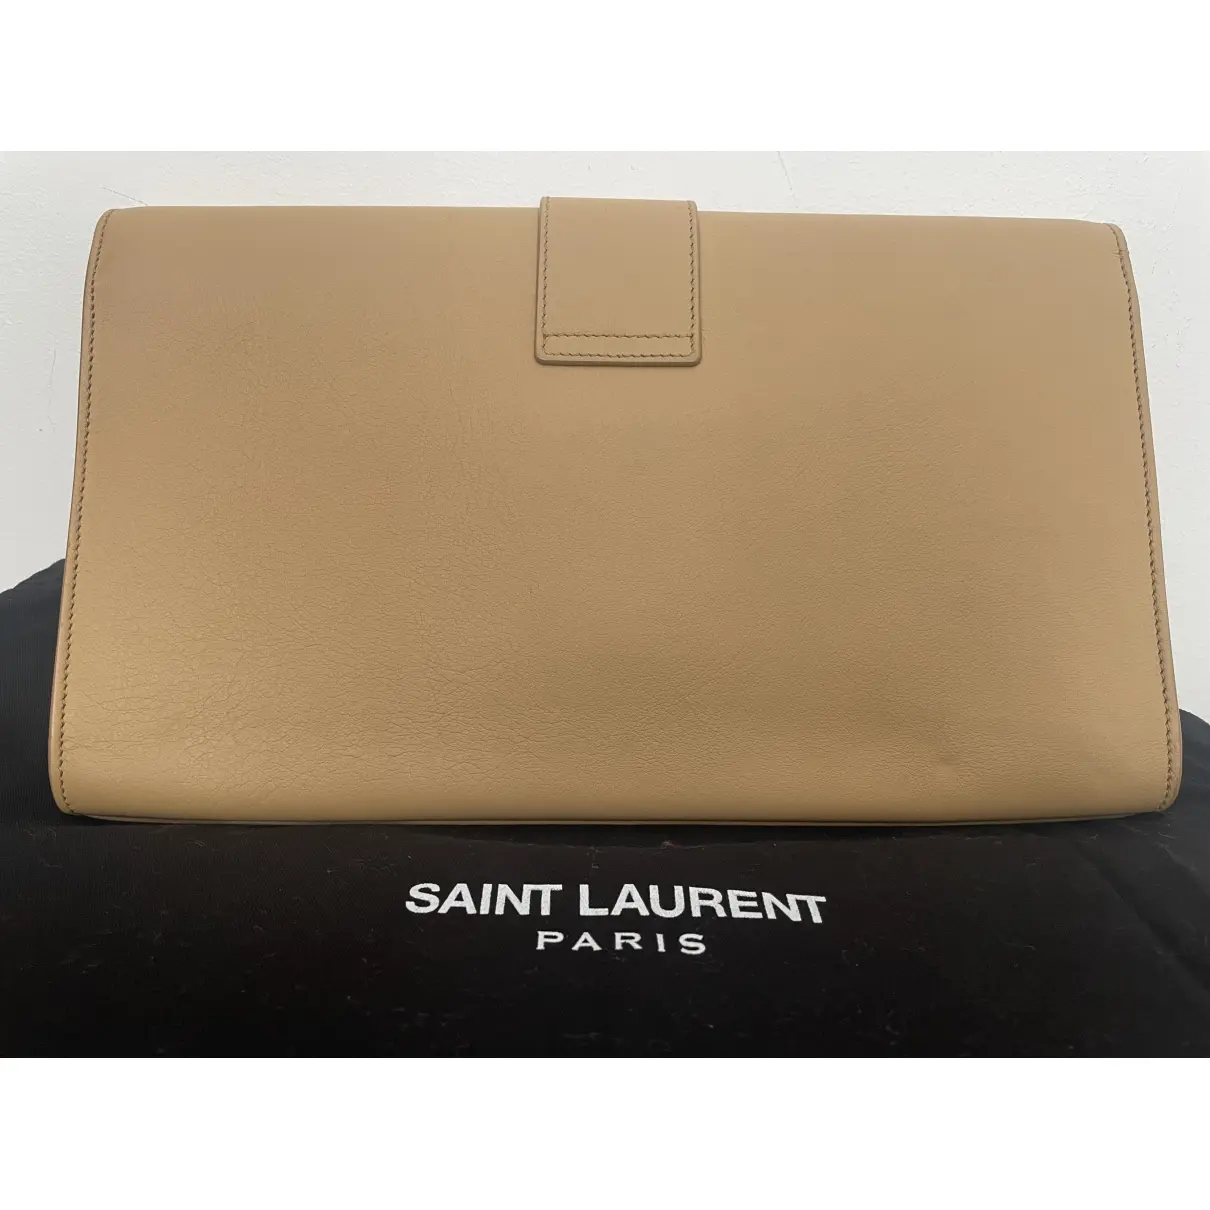 Buy Saint Laurent Leather clutch bag online